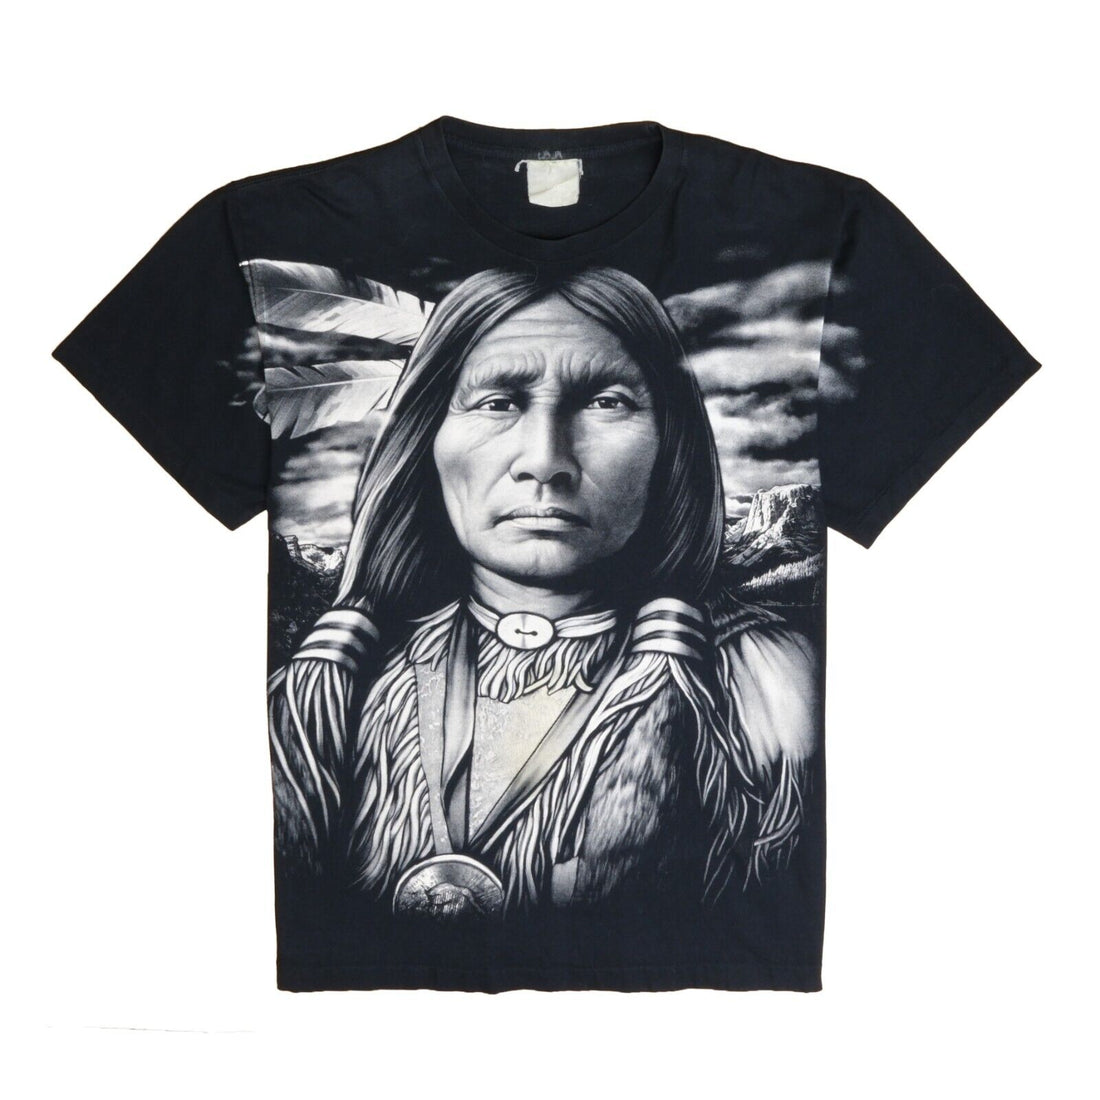 Vintage Native Portrait T-Shirt Size XL Black All Over Print